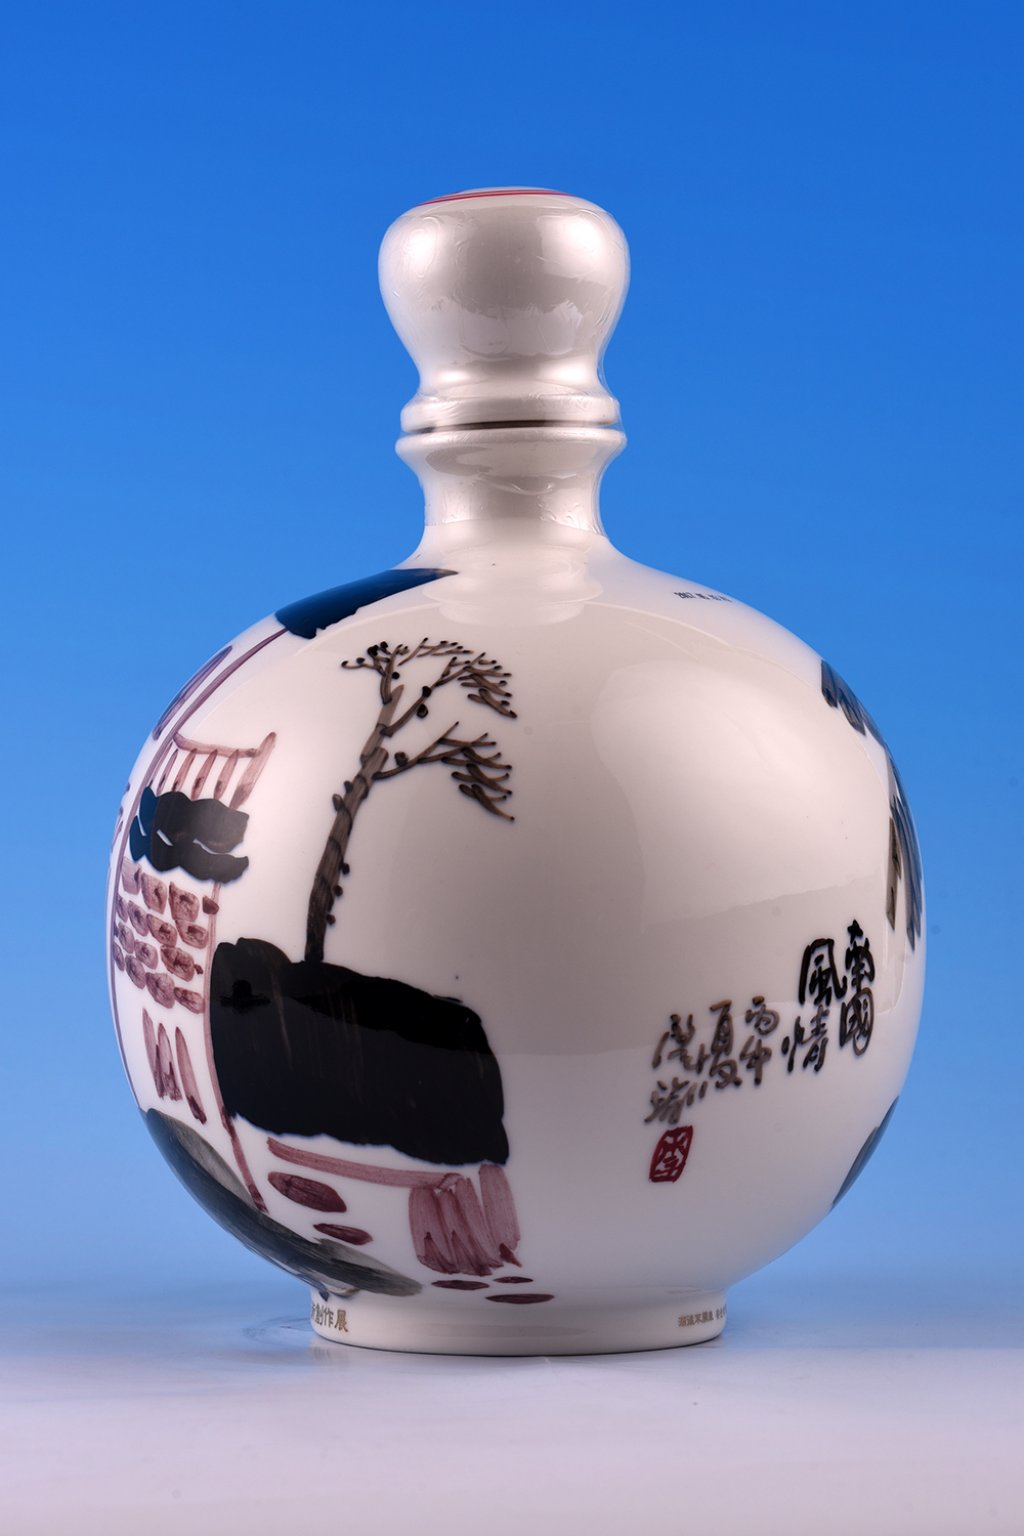 【雙金彩陶】李肇瑜 /<br>南國風情 | 手繪瓷瓶高粱酒